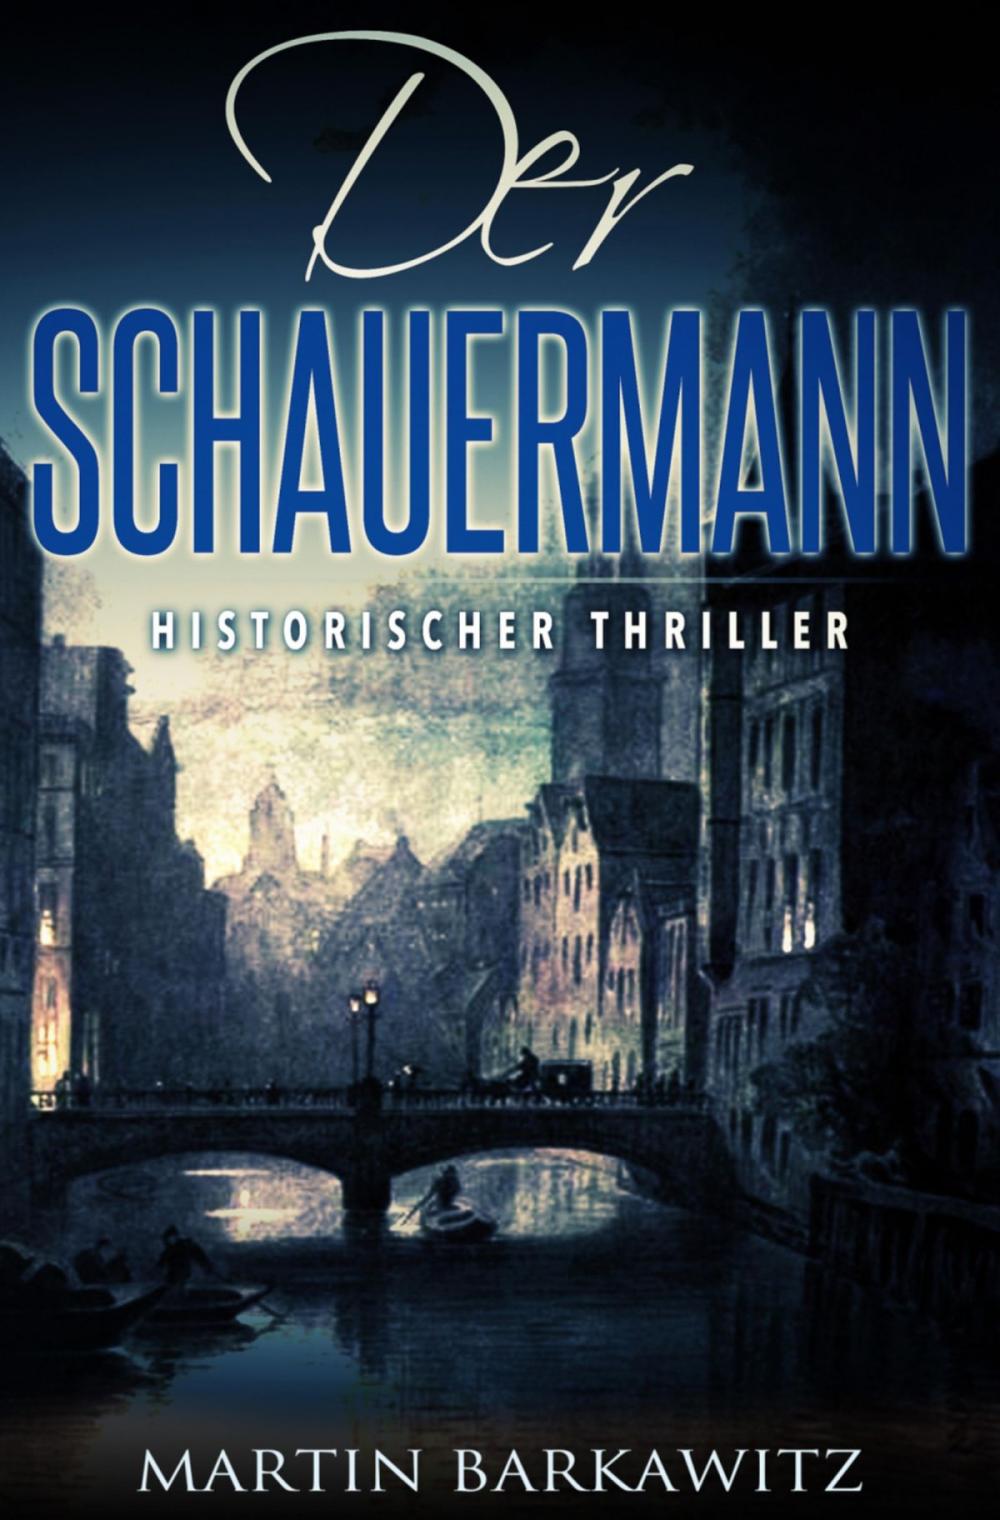 Big bigCover of Der Schauermann